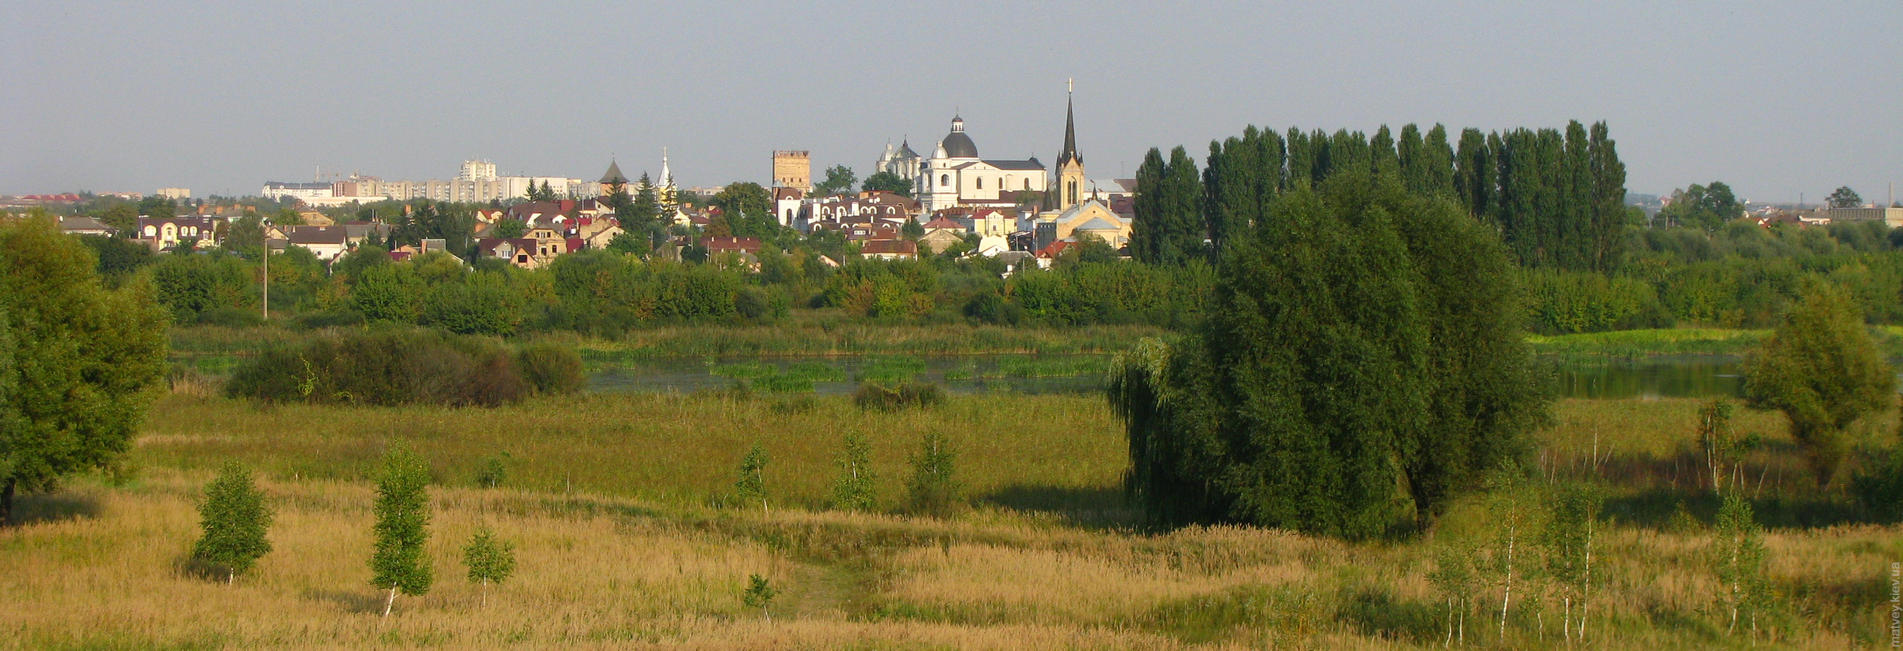 Панорама старого города с другого берега реки. Луцк